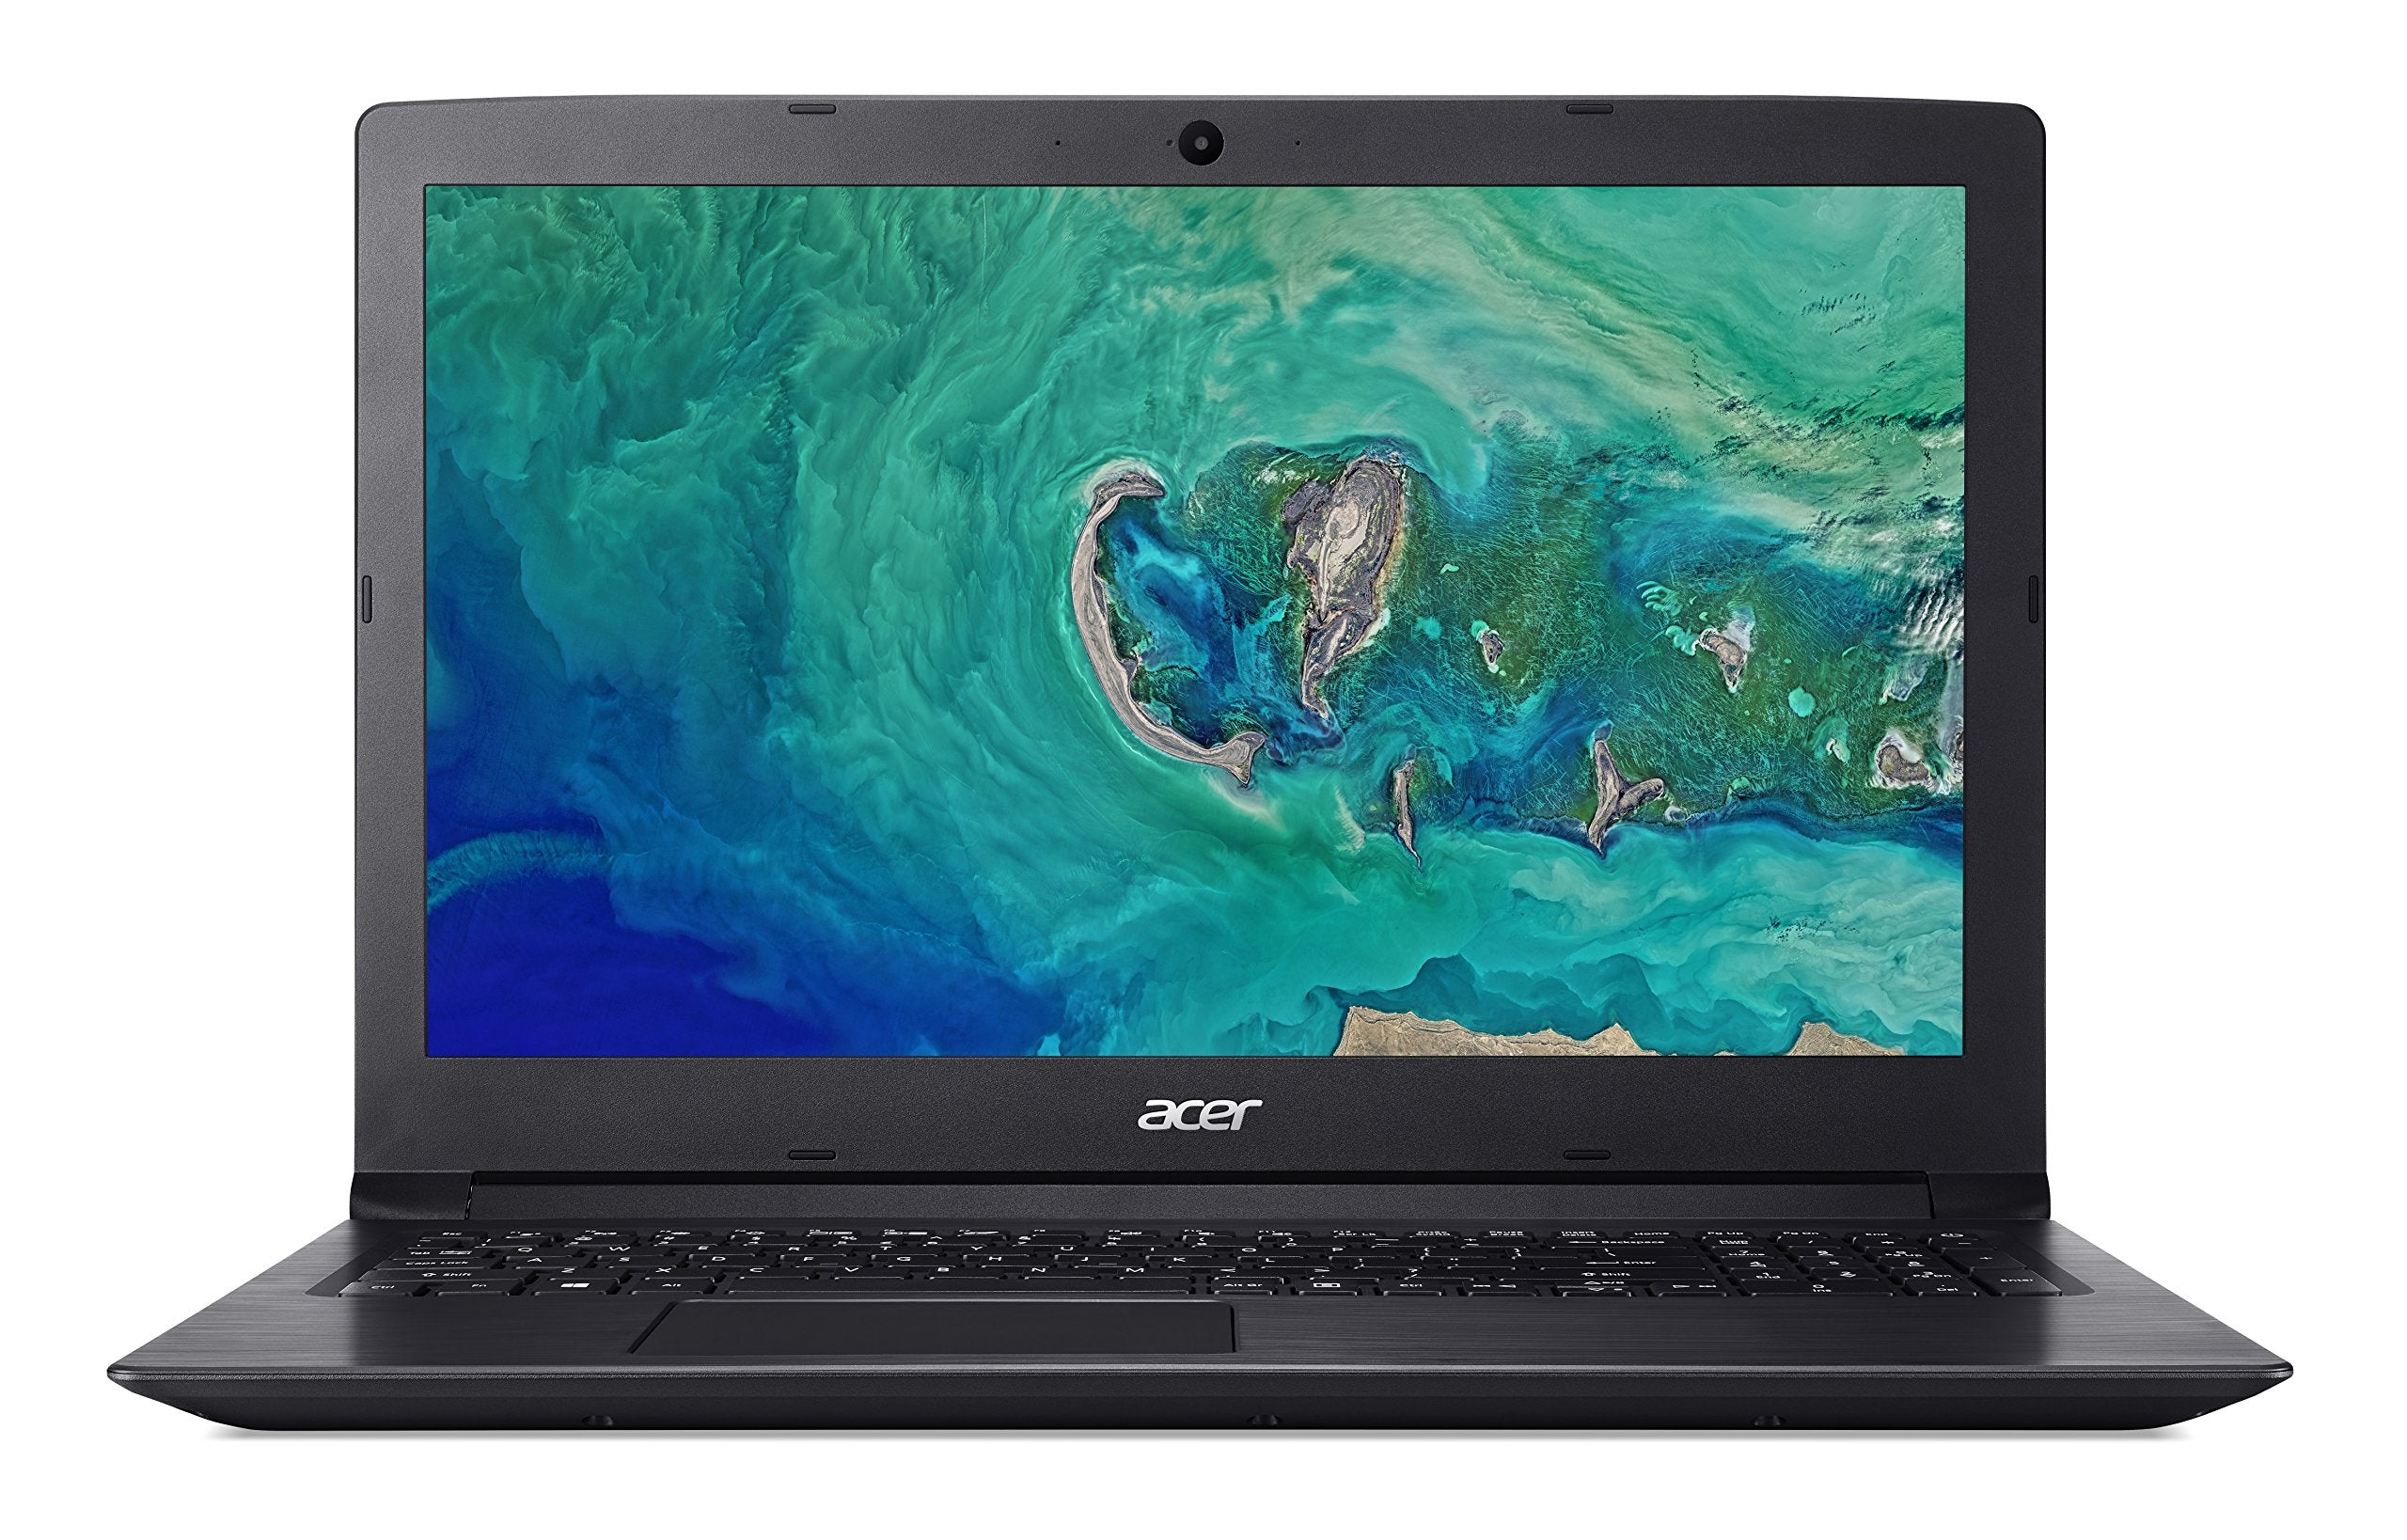 Acer Aspire 3, i5-7200u, 12GB, 256GB SSD - Refurbished Good Condition